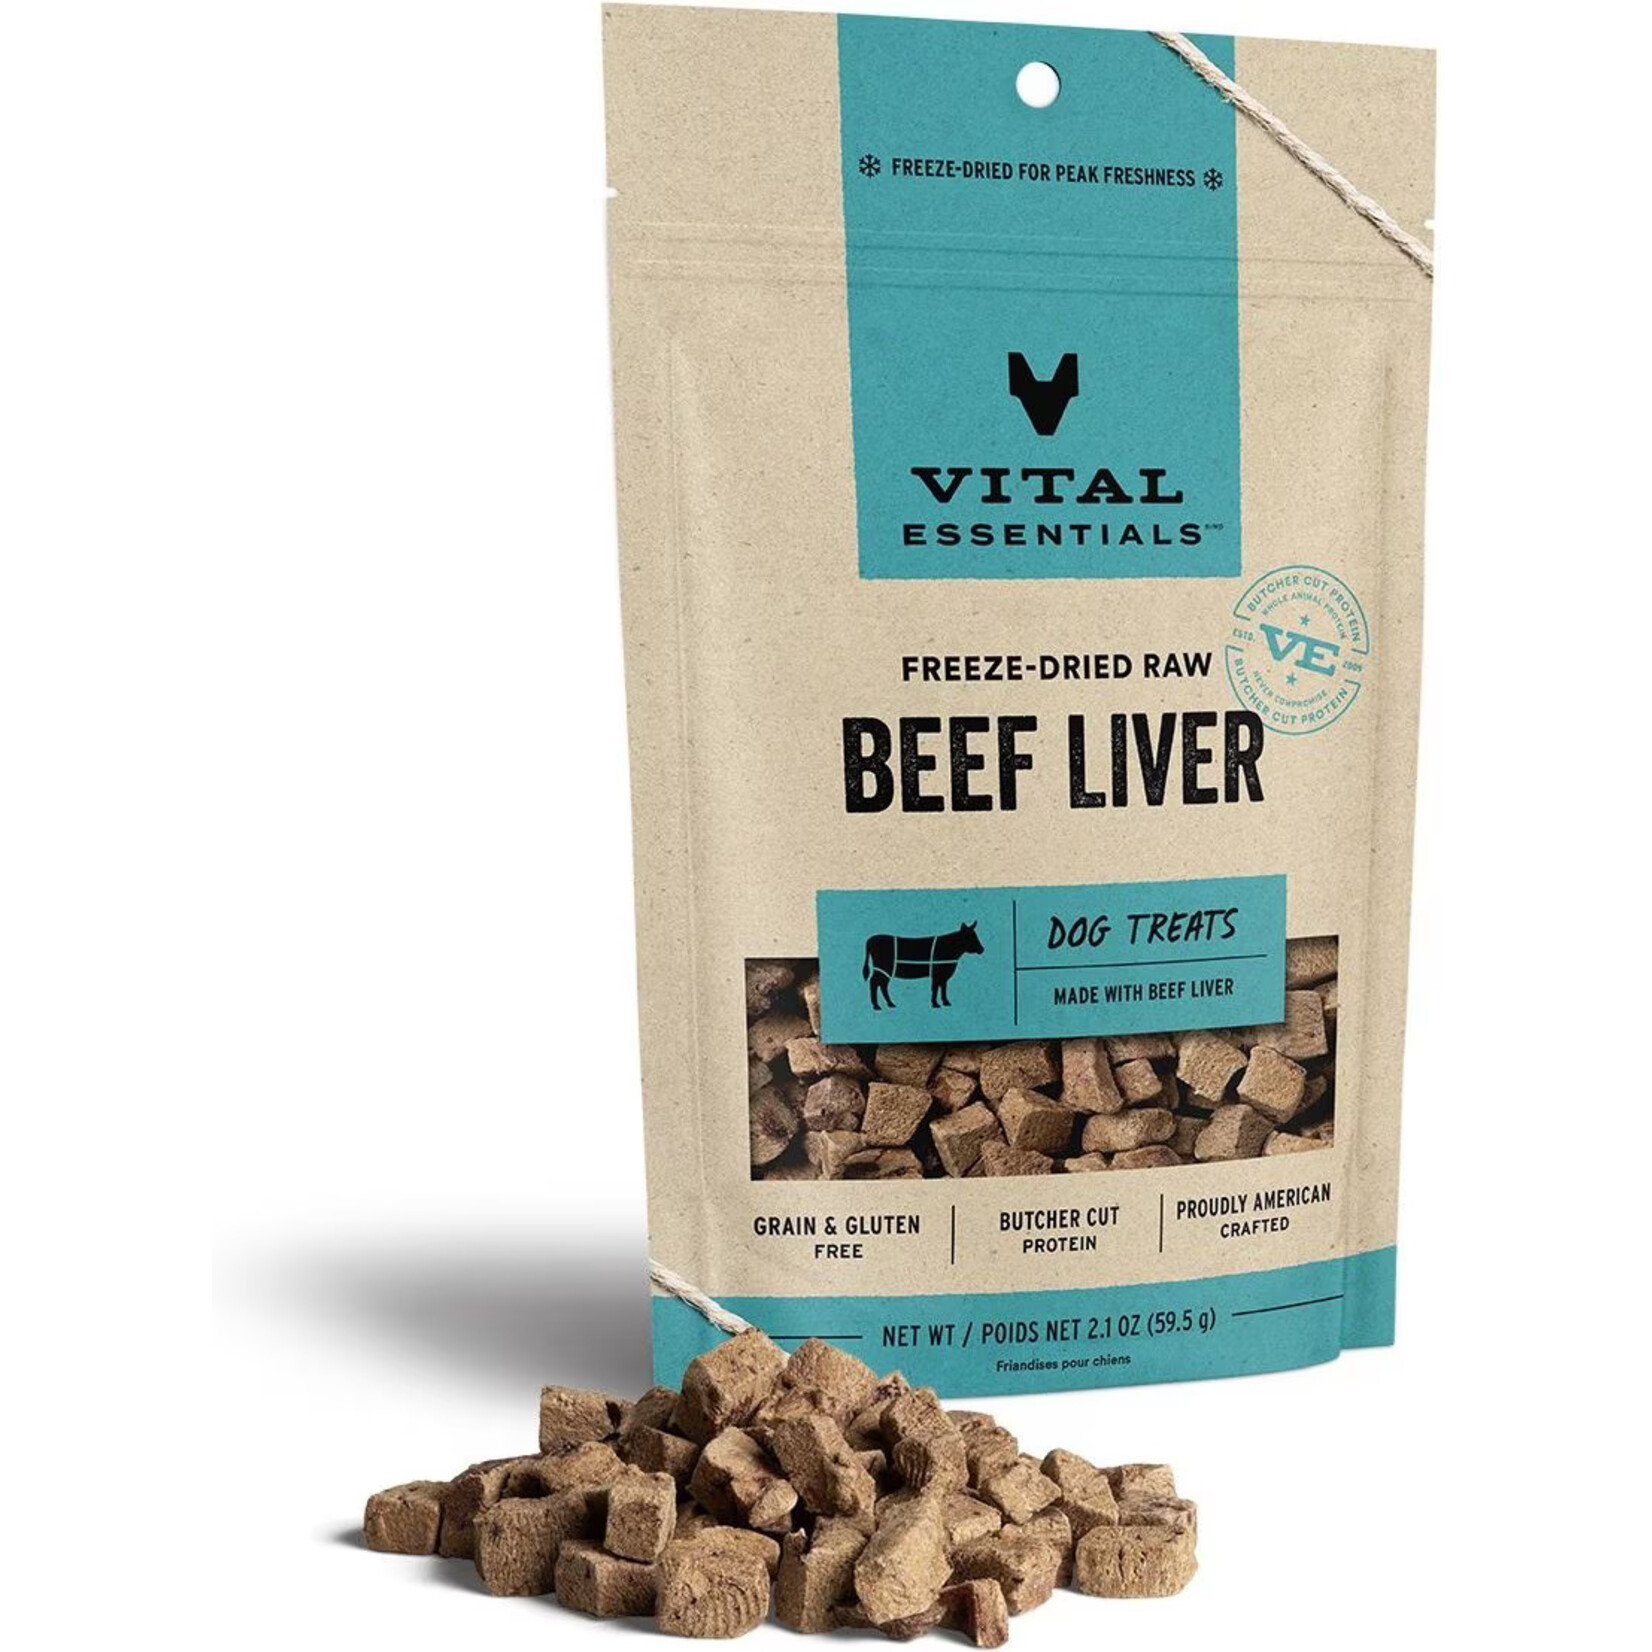 Vital Essentials Vital Essentials Freeze-Dried Raw Beef Liver Dog Treats